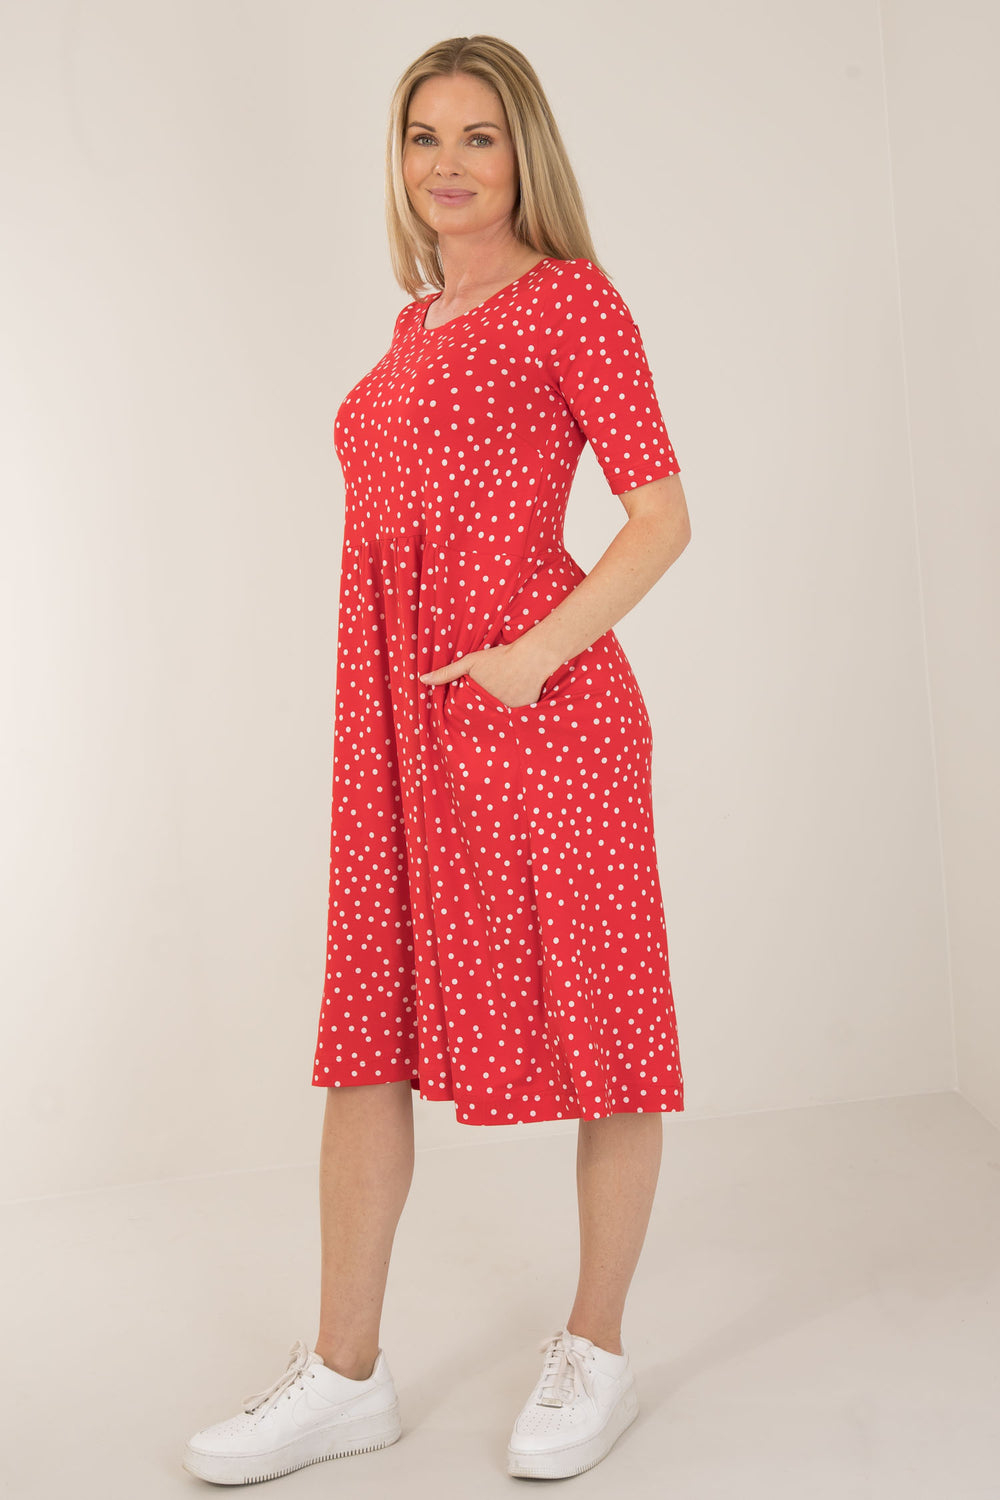 Ideal printed short jersey dress - Red dot - Knälång, prickig klänning i trikå